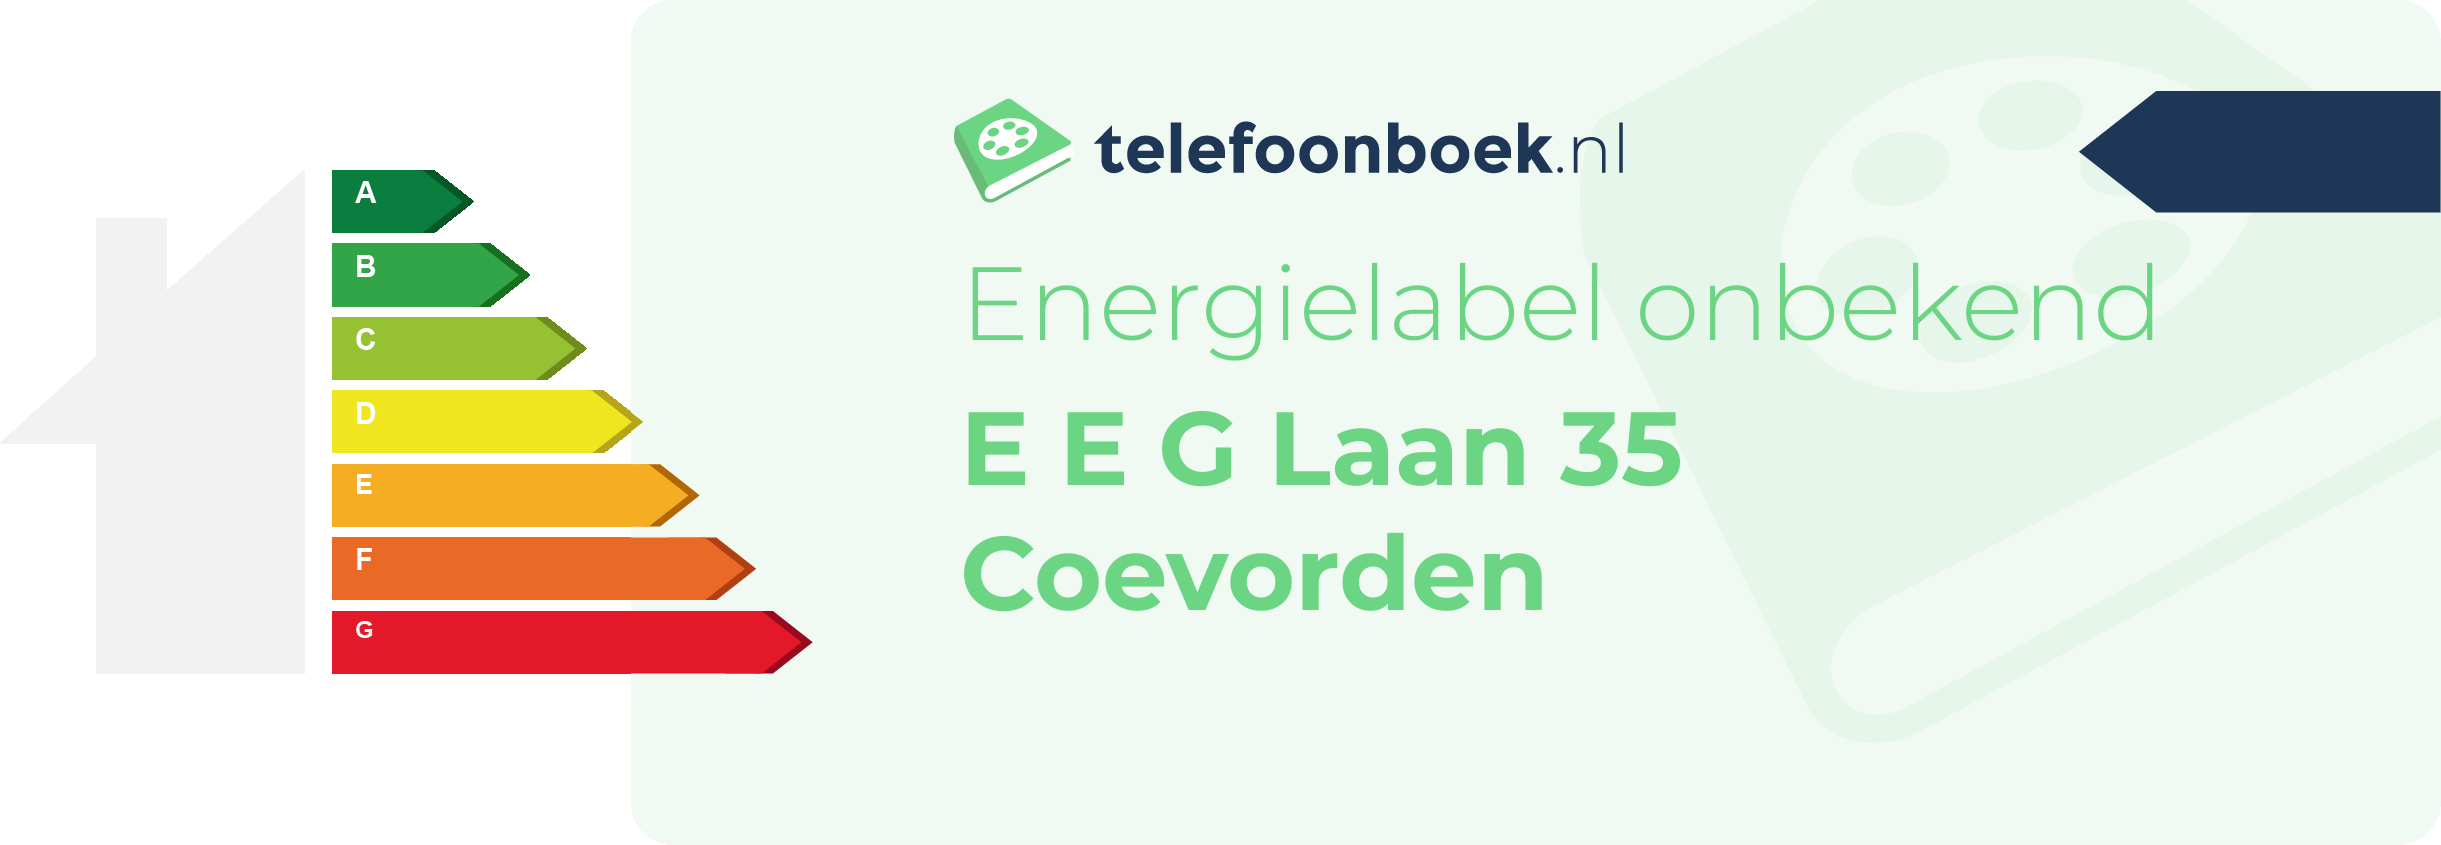 Energielabel E E G Laan 35 Coevorden